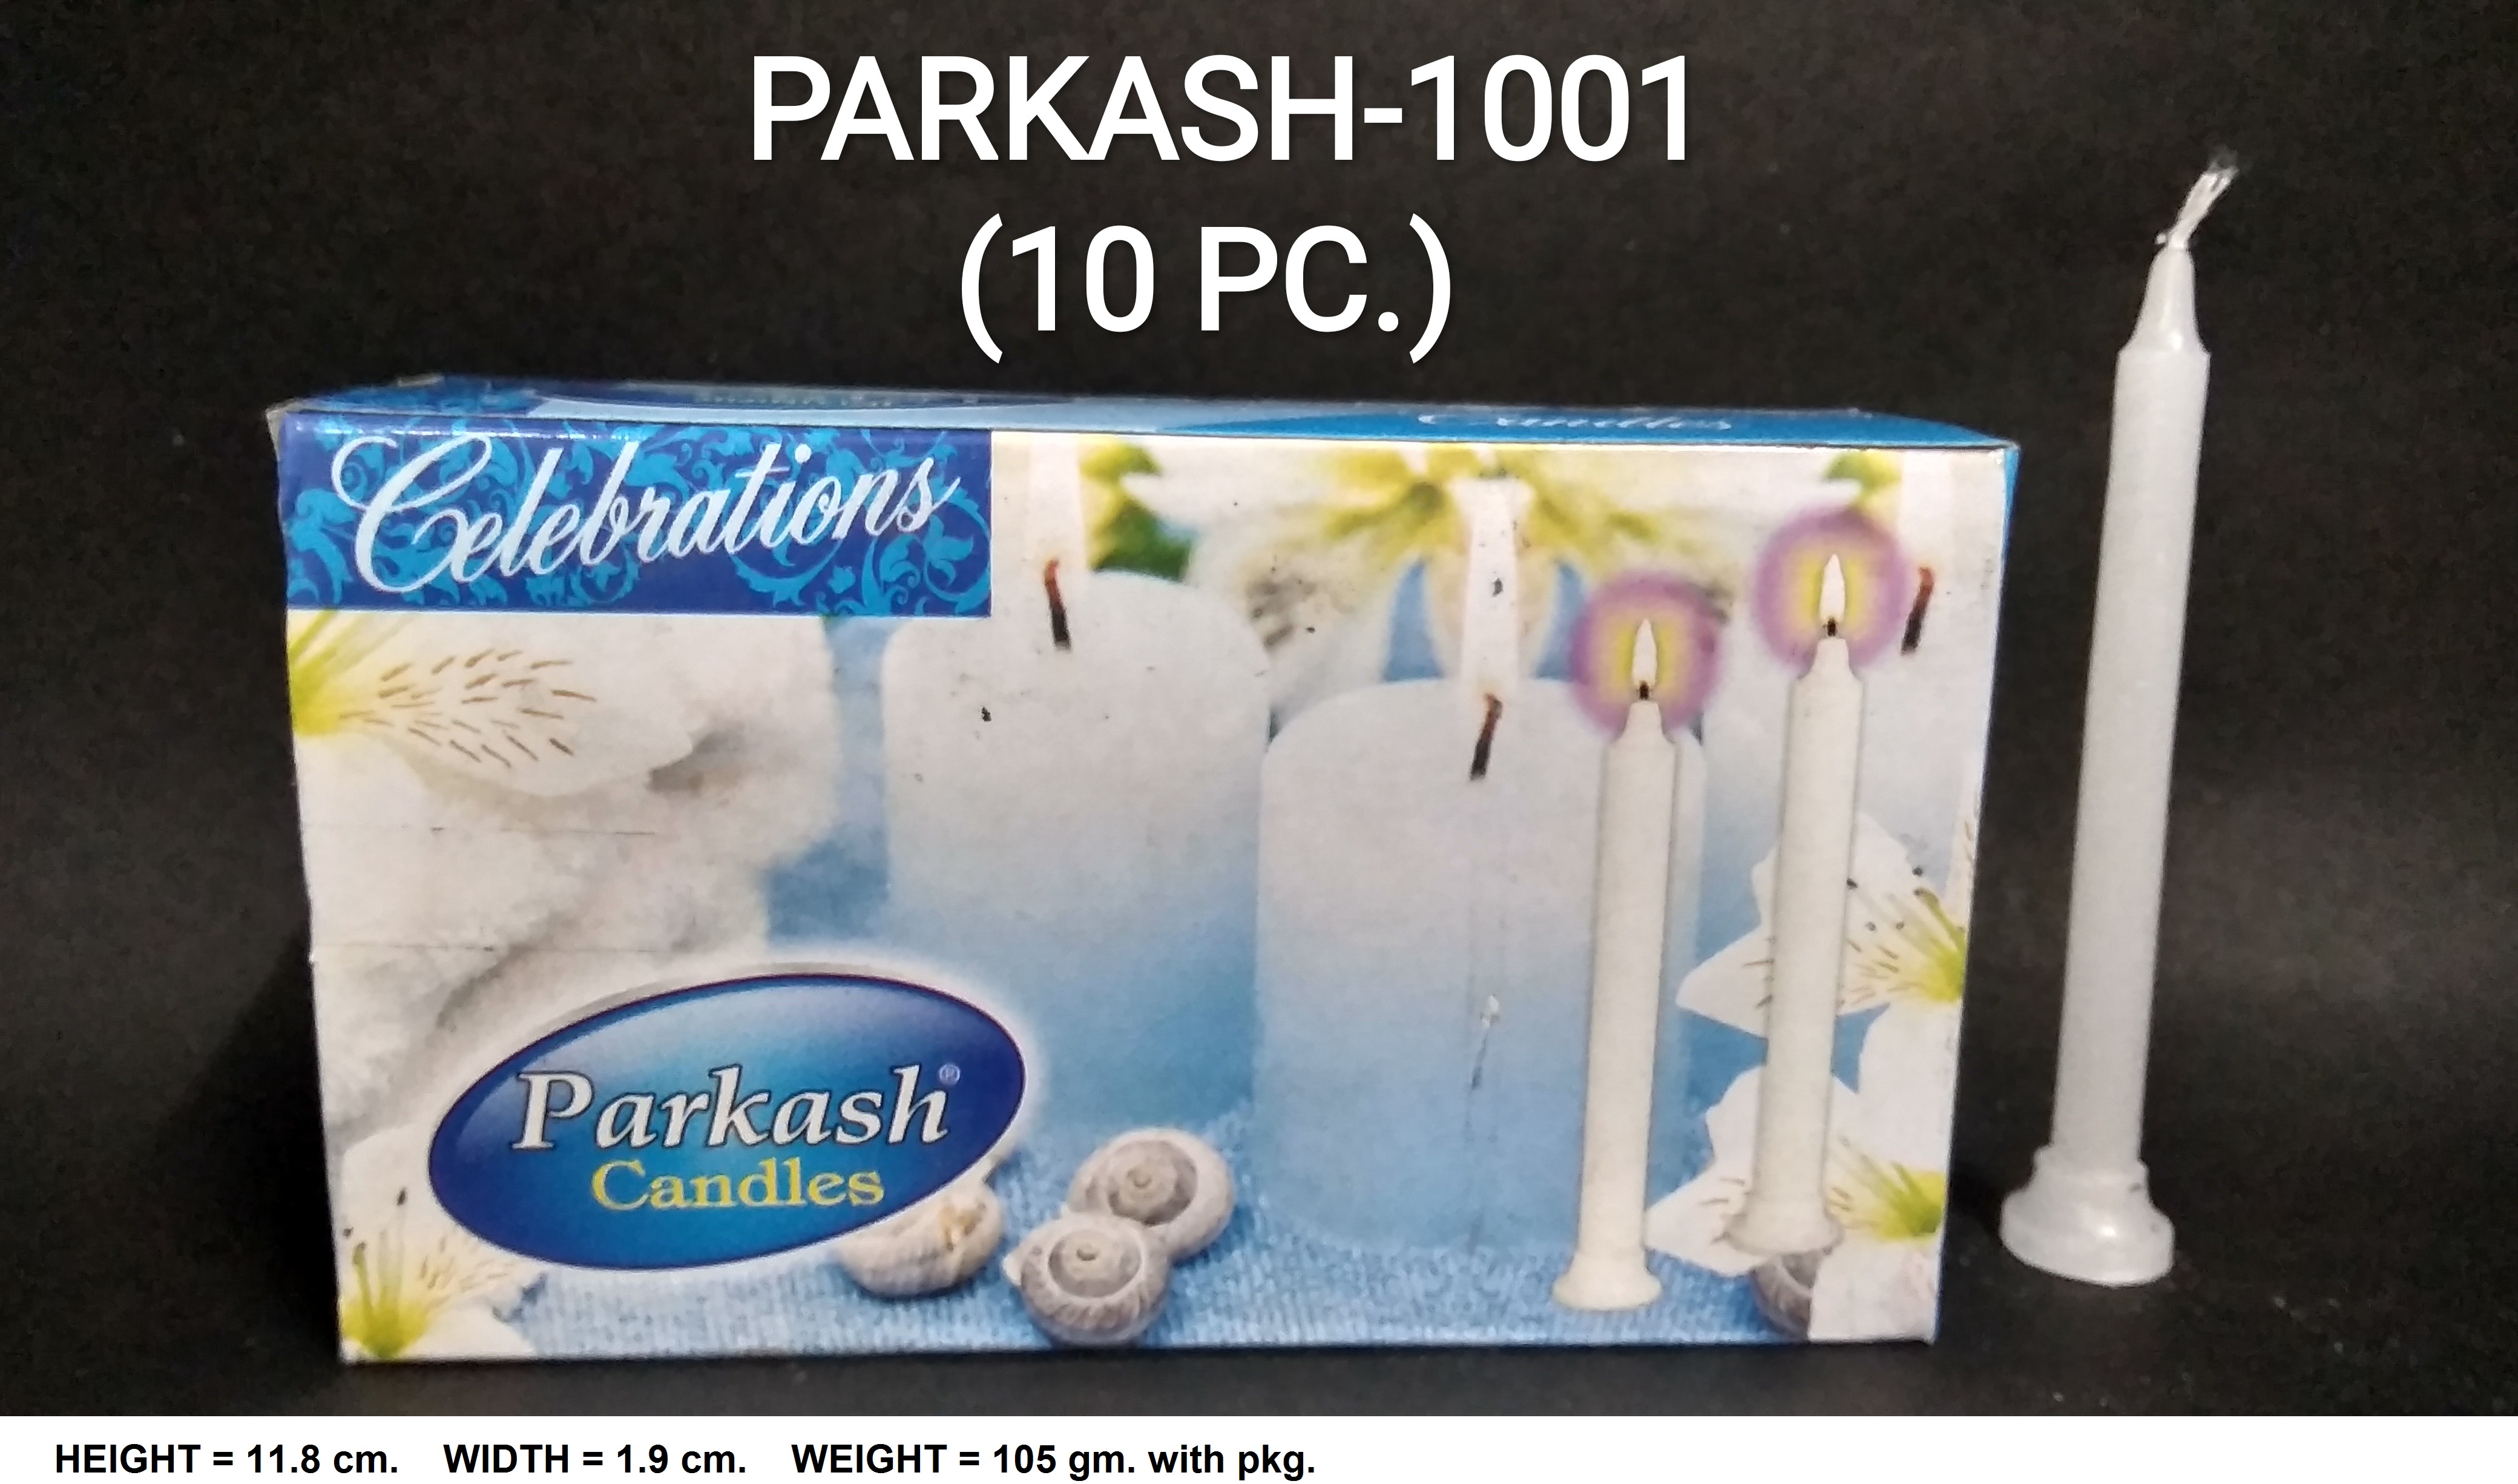 PARKASH-1001